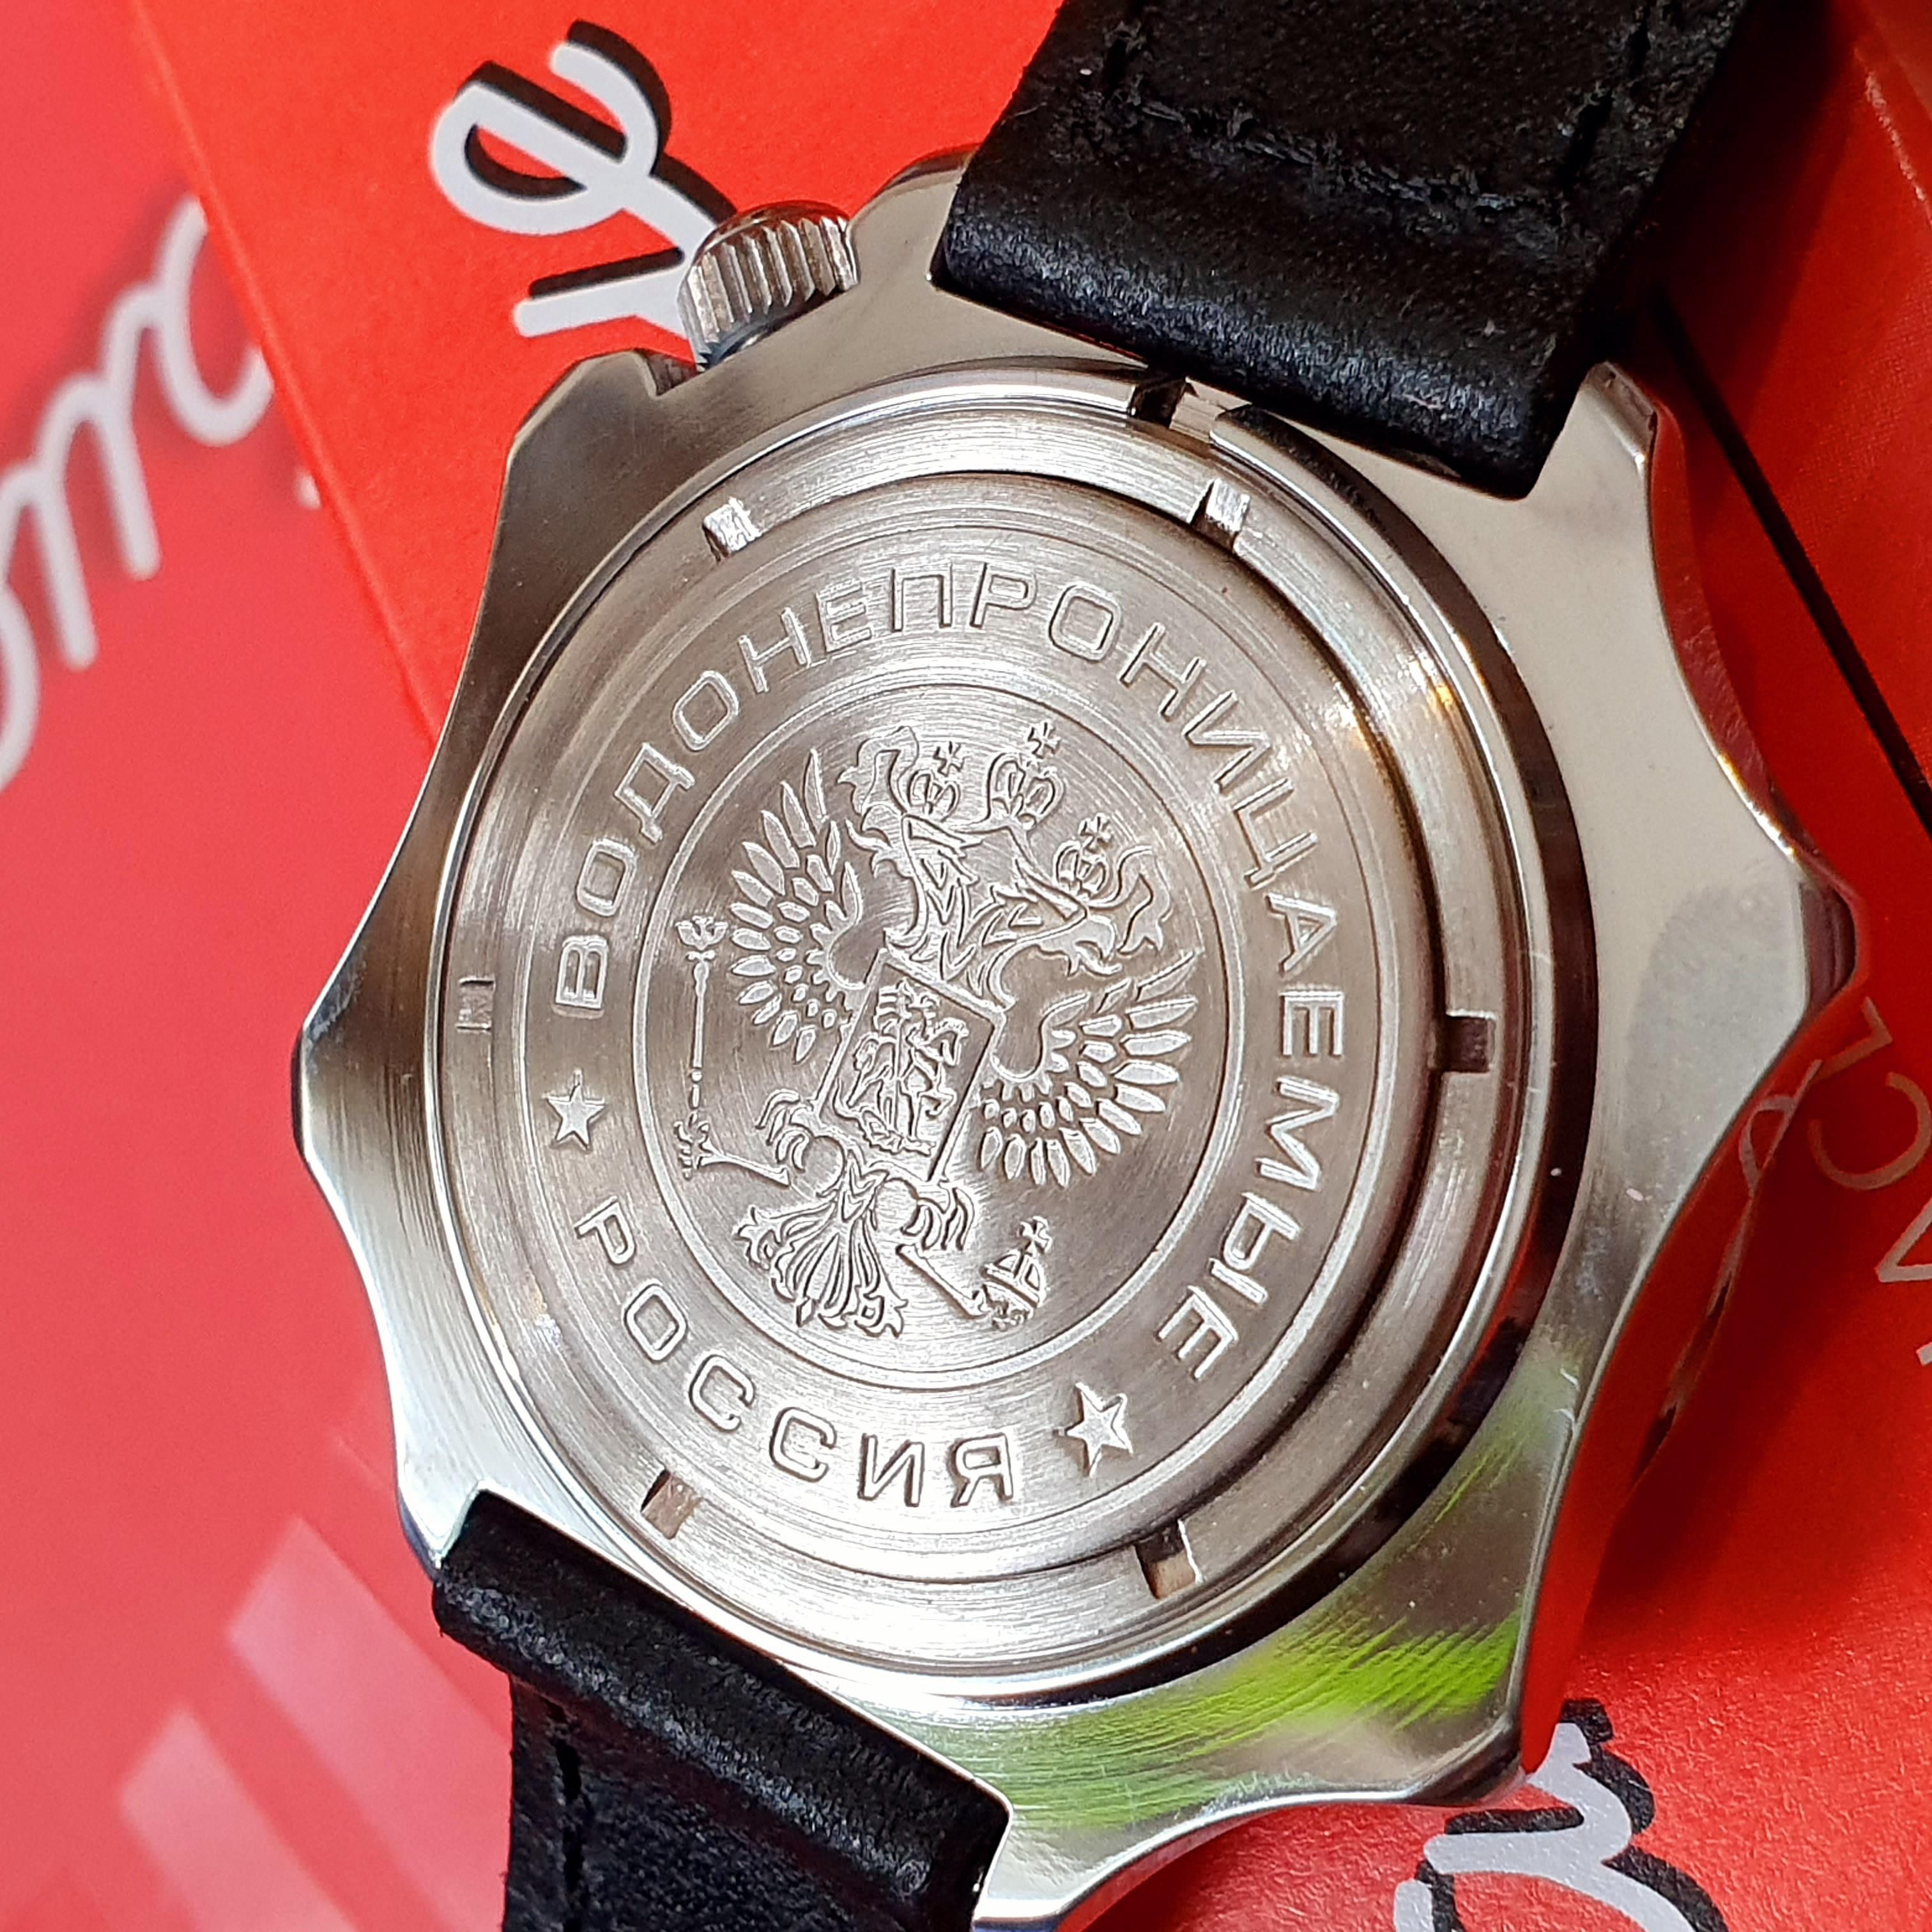 Đồng hồ vostok chính ủy komandirskie 531764